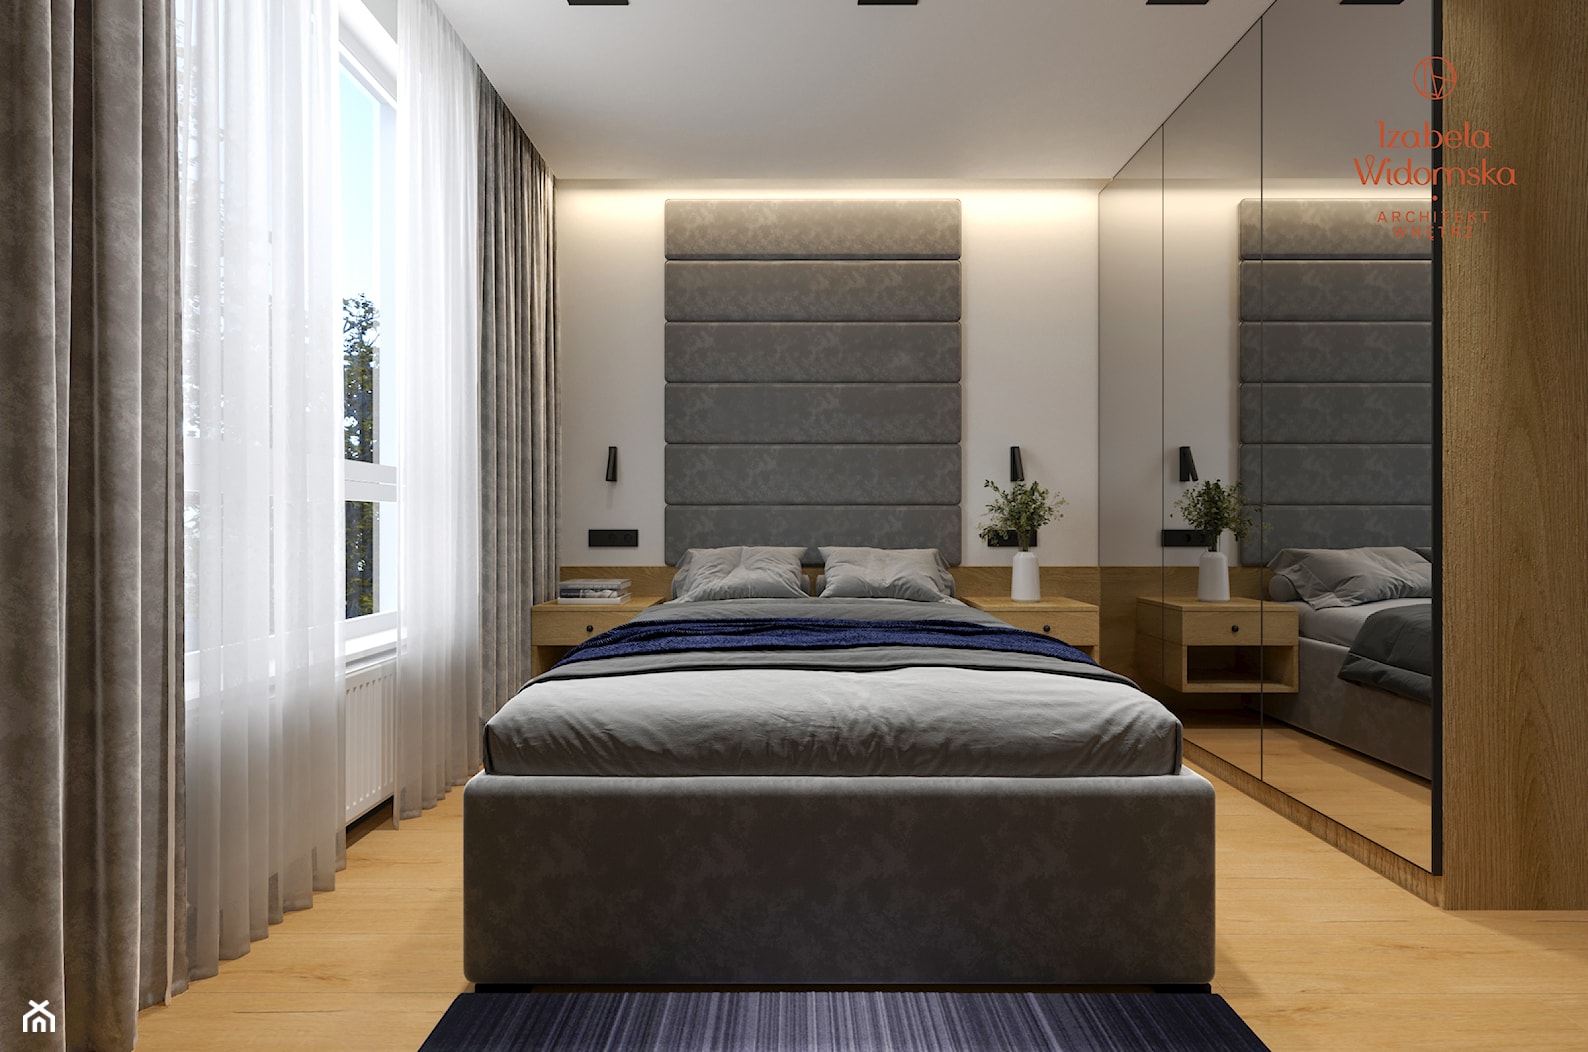 Minimalistyczne męskie mieszkanie - Sypialnia, styl nowoczesny - zdjęcie od Izabela Widomska Wnętrza - Homebook